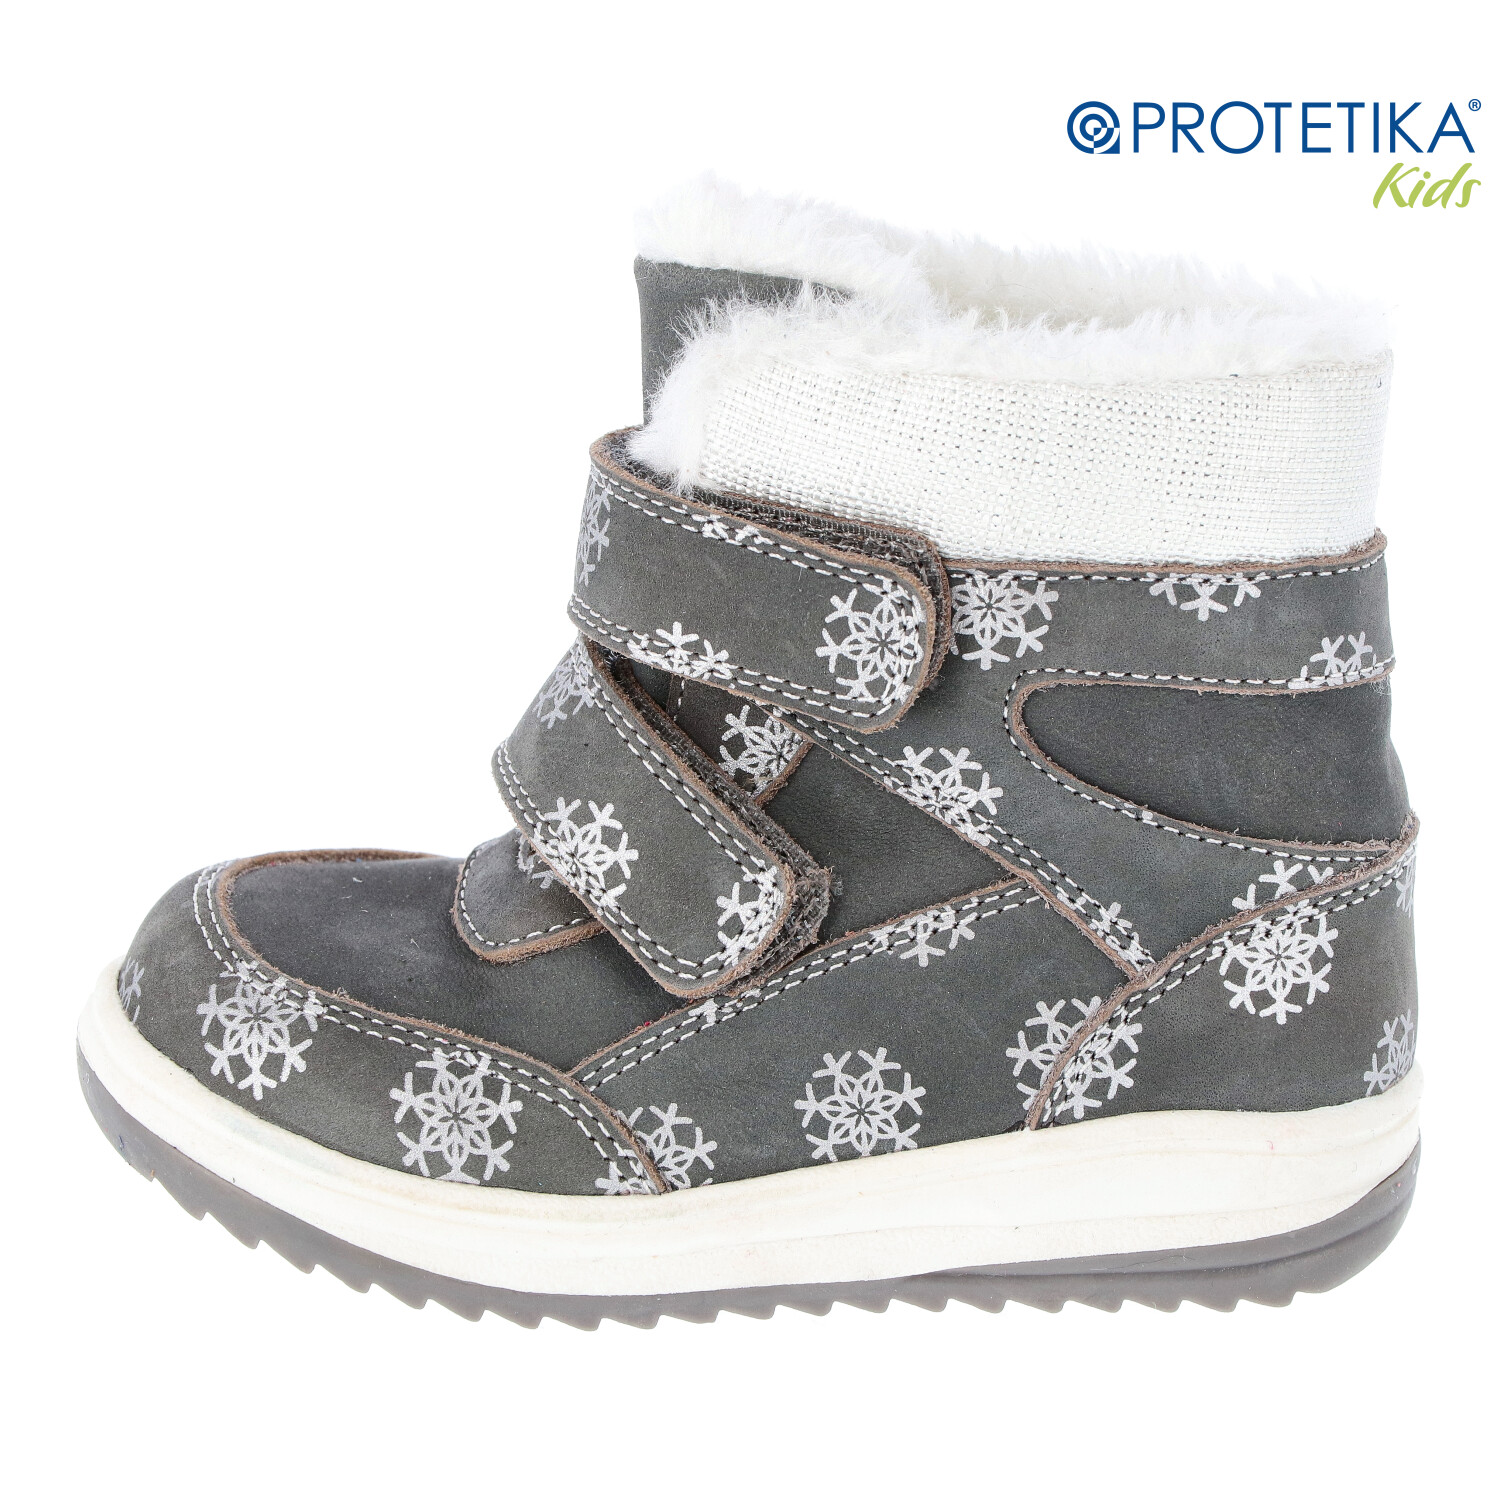 Protetika - zimné topánky RAMONA grey - zateplené kožušinkou